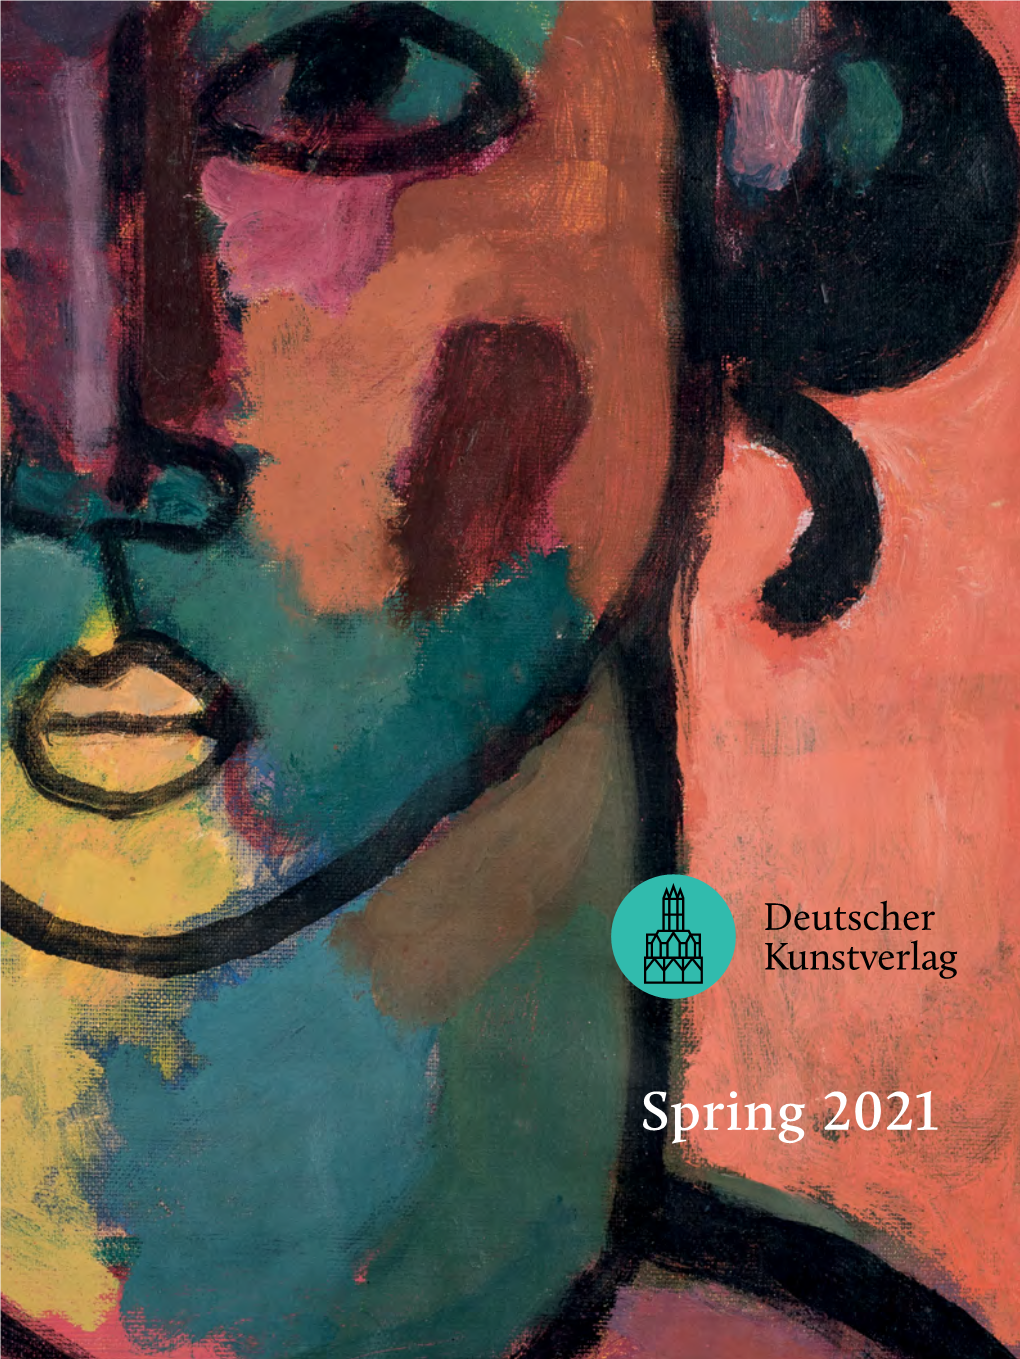 Spring 2021 Dear Friends of the Deutscher Kunstverlag, Dear Readers